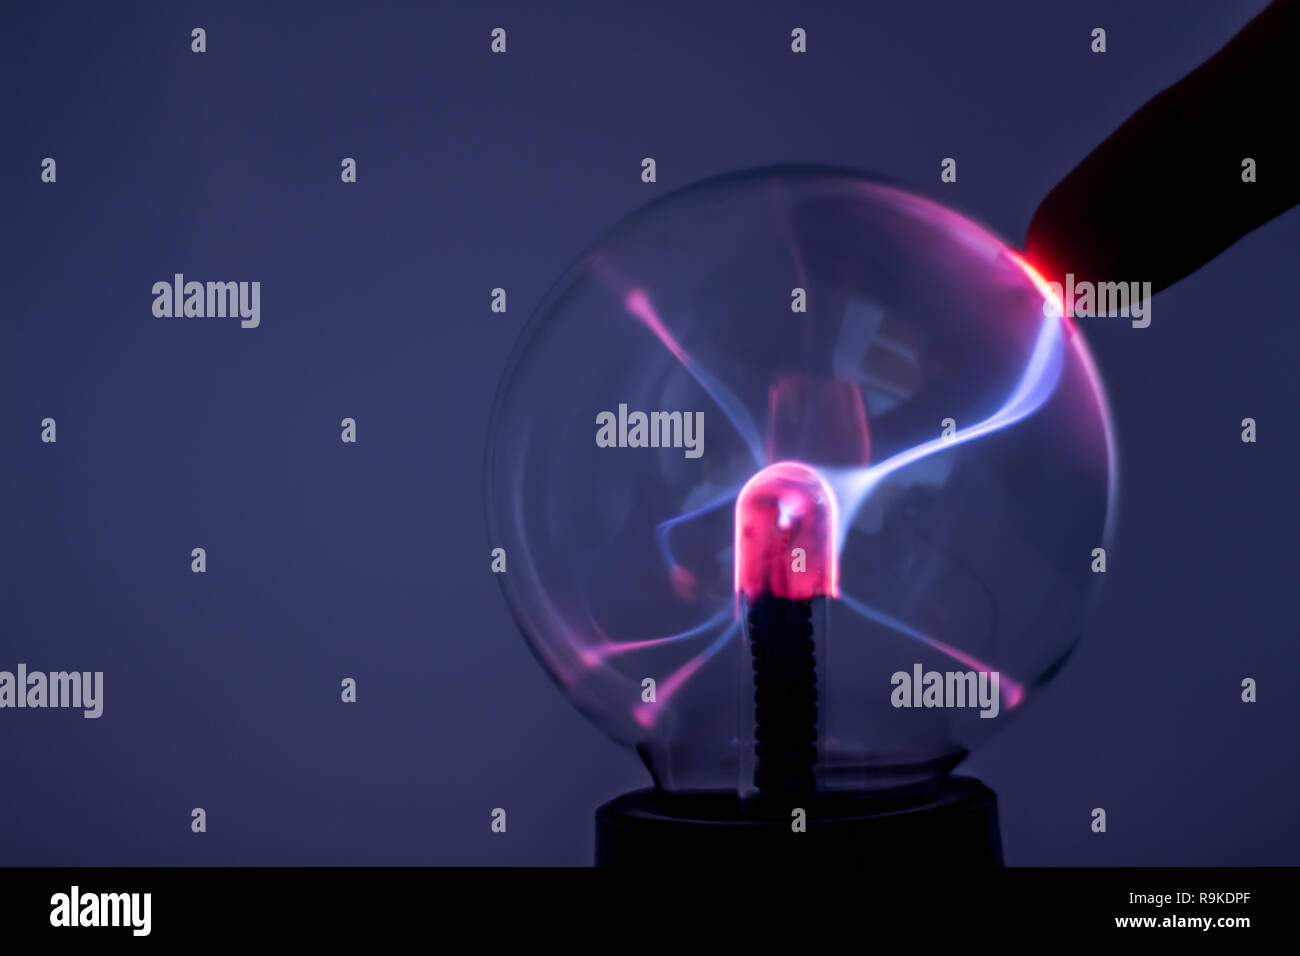 Une lampe à plasma avec rayons électricité rose. Effet de l'électricité sur le verre. Banque D'Images